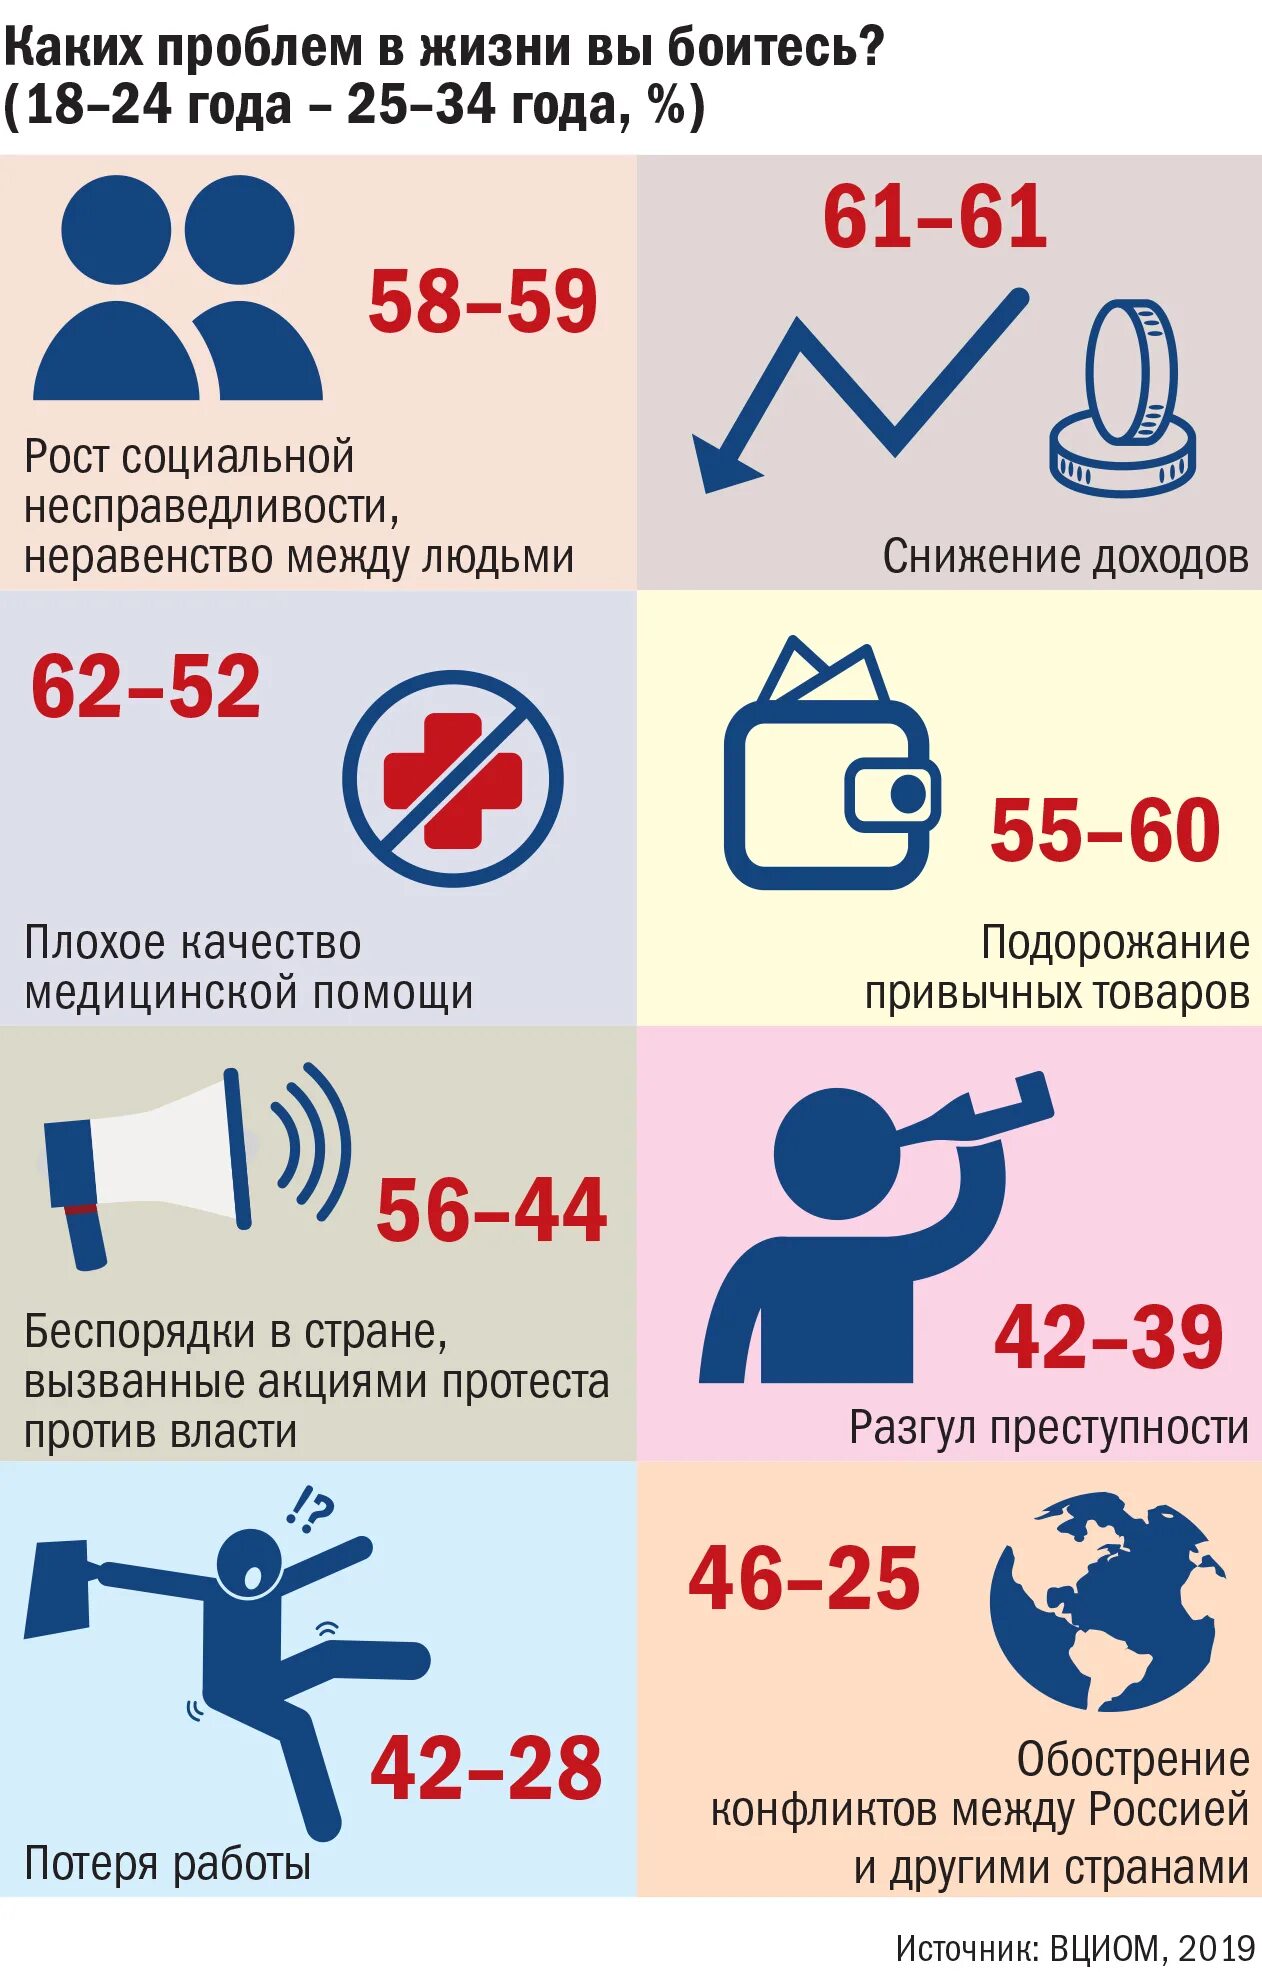 Младше по возрасту. Молодежь Возраст. Молодежь по возрасту. Возраст молодежи в России по закону.